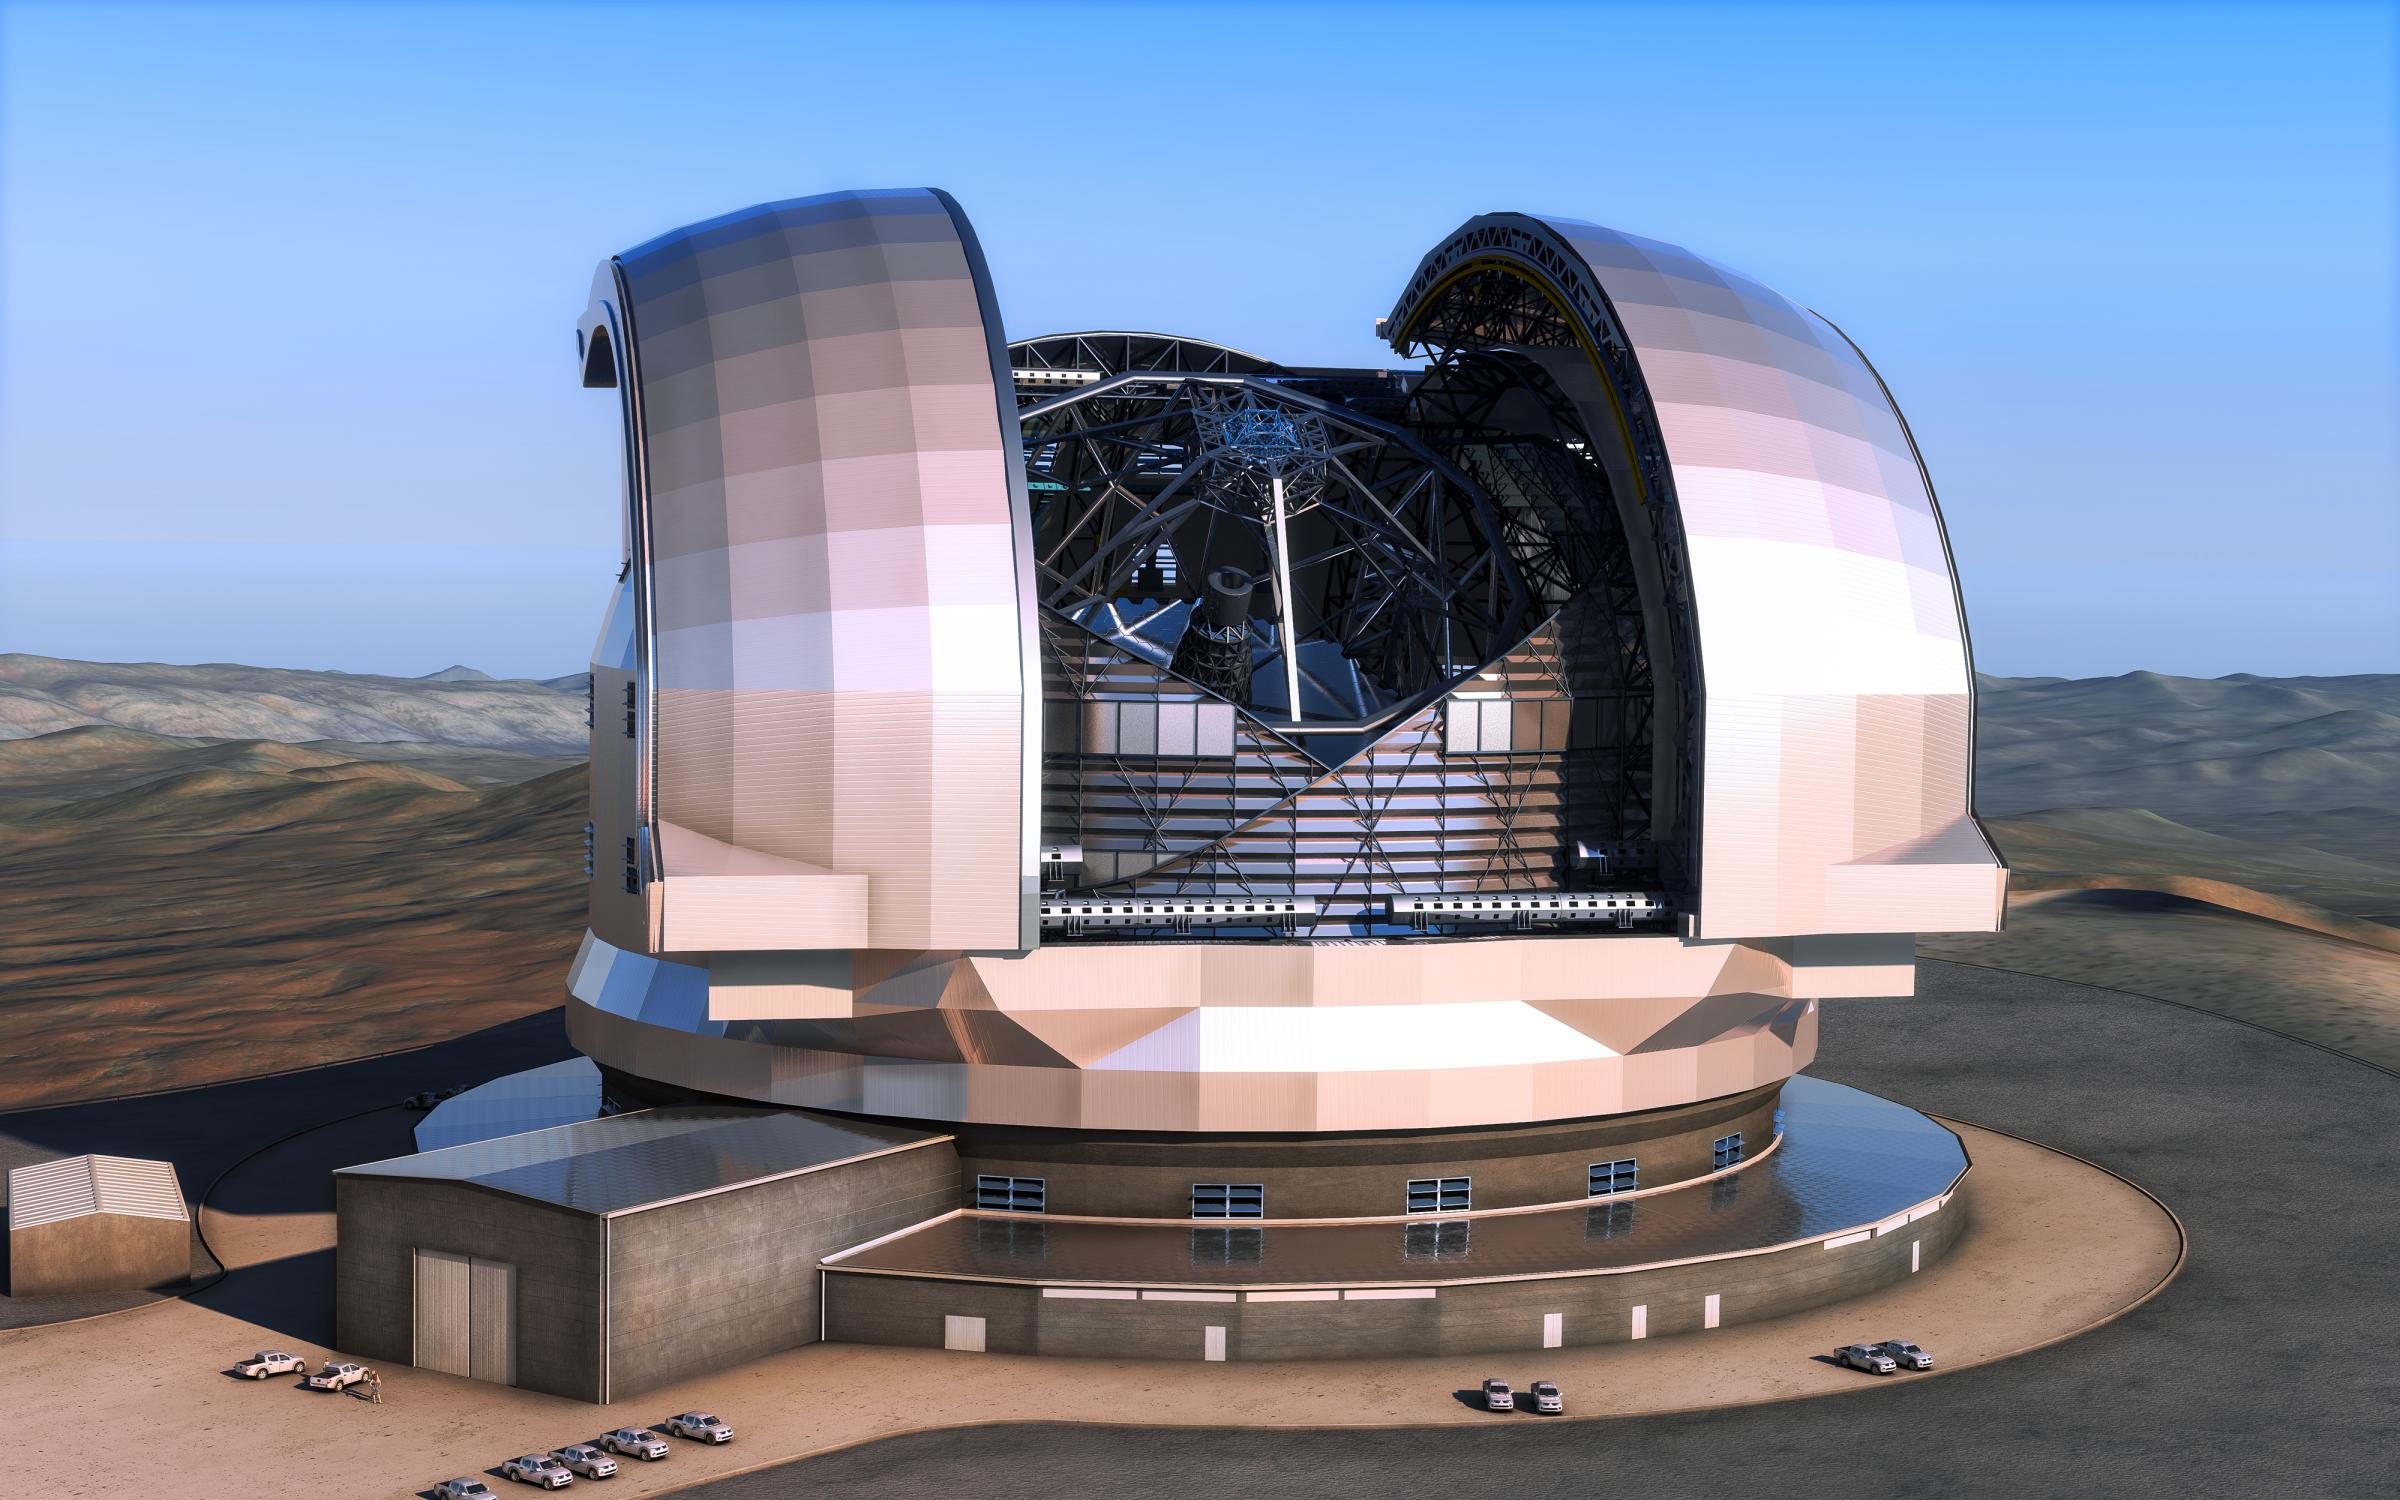 Ilustración del futuro telescopio gigante E-ELT, del Observatorio Europeo Austral (ESO), que se instalará en Chile. El espejo principal del telescopio medirá 39 metros de diámetro.